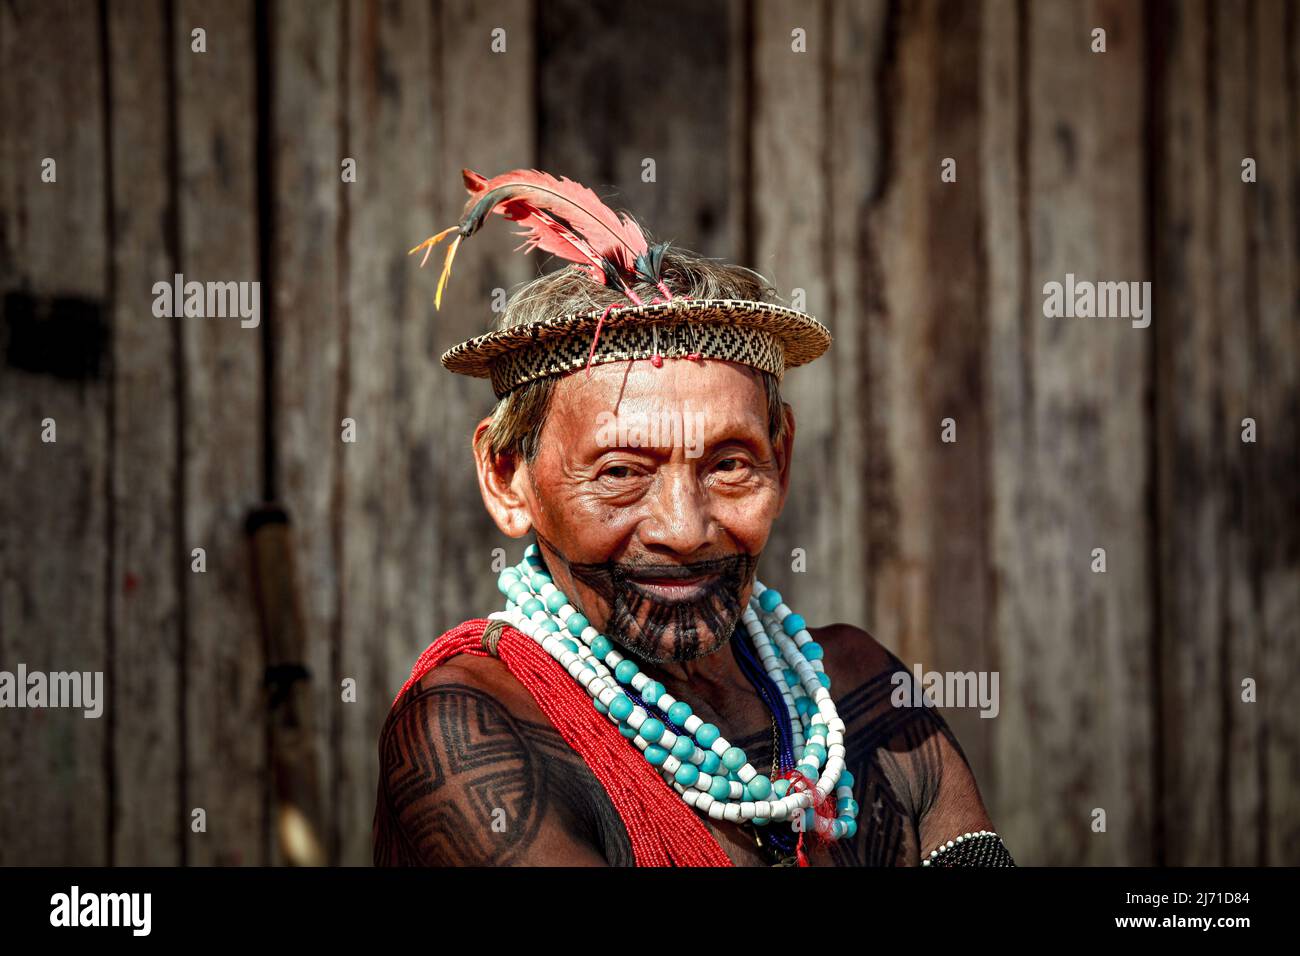 Chef de la tribu indigène Asurini dans l'Amazonie brésilienne. Rivière Xingu, Brésil, 2010. Banque D'Images